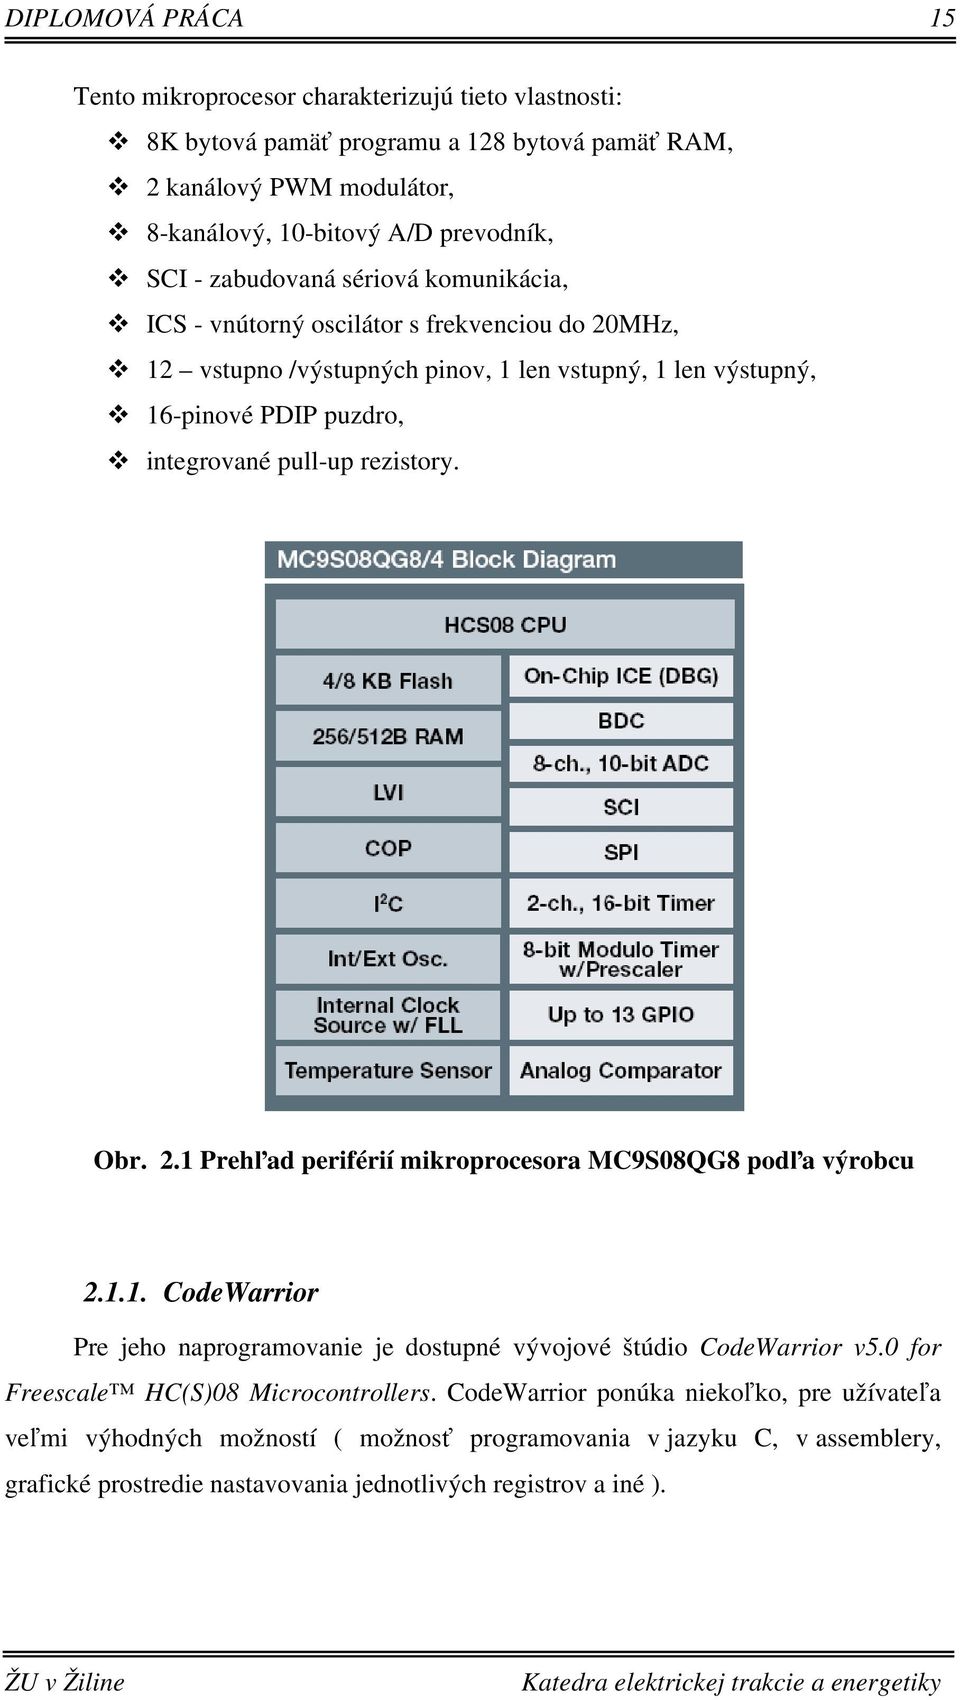 rezistory. Obr. 2.1 Prehľad periférií mikroprocesora MC9S08QG8 podľa výrobcu 2.1.1. CodeWarrior Pre jeho naprogramovanie je dostupné vývojové štúdio CodeWarrior v5.